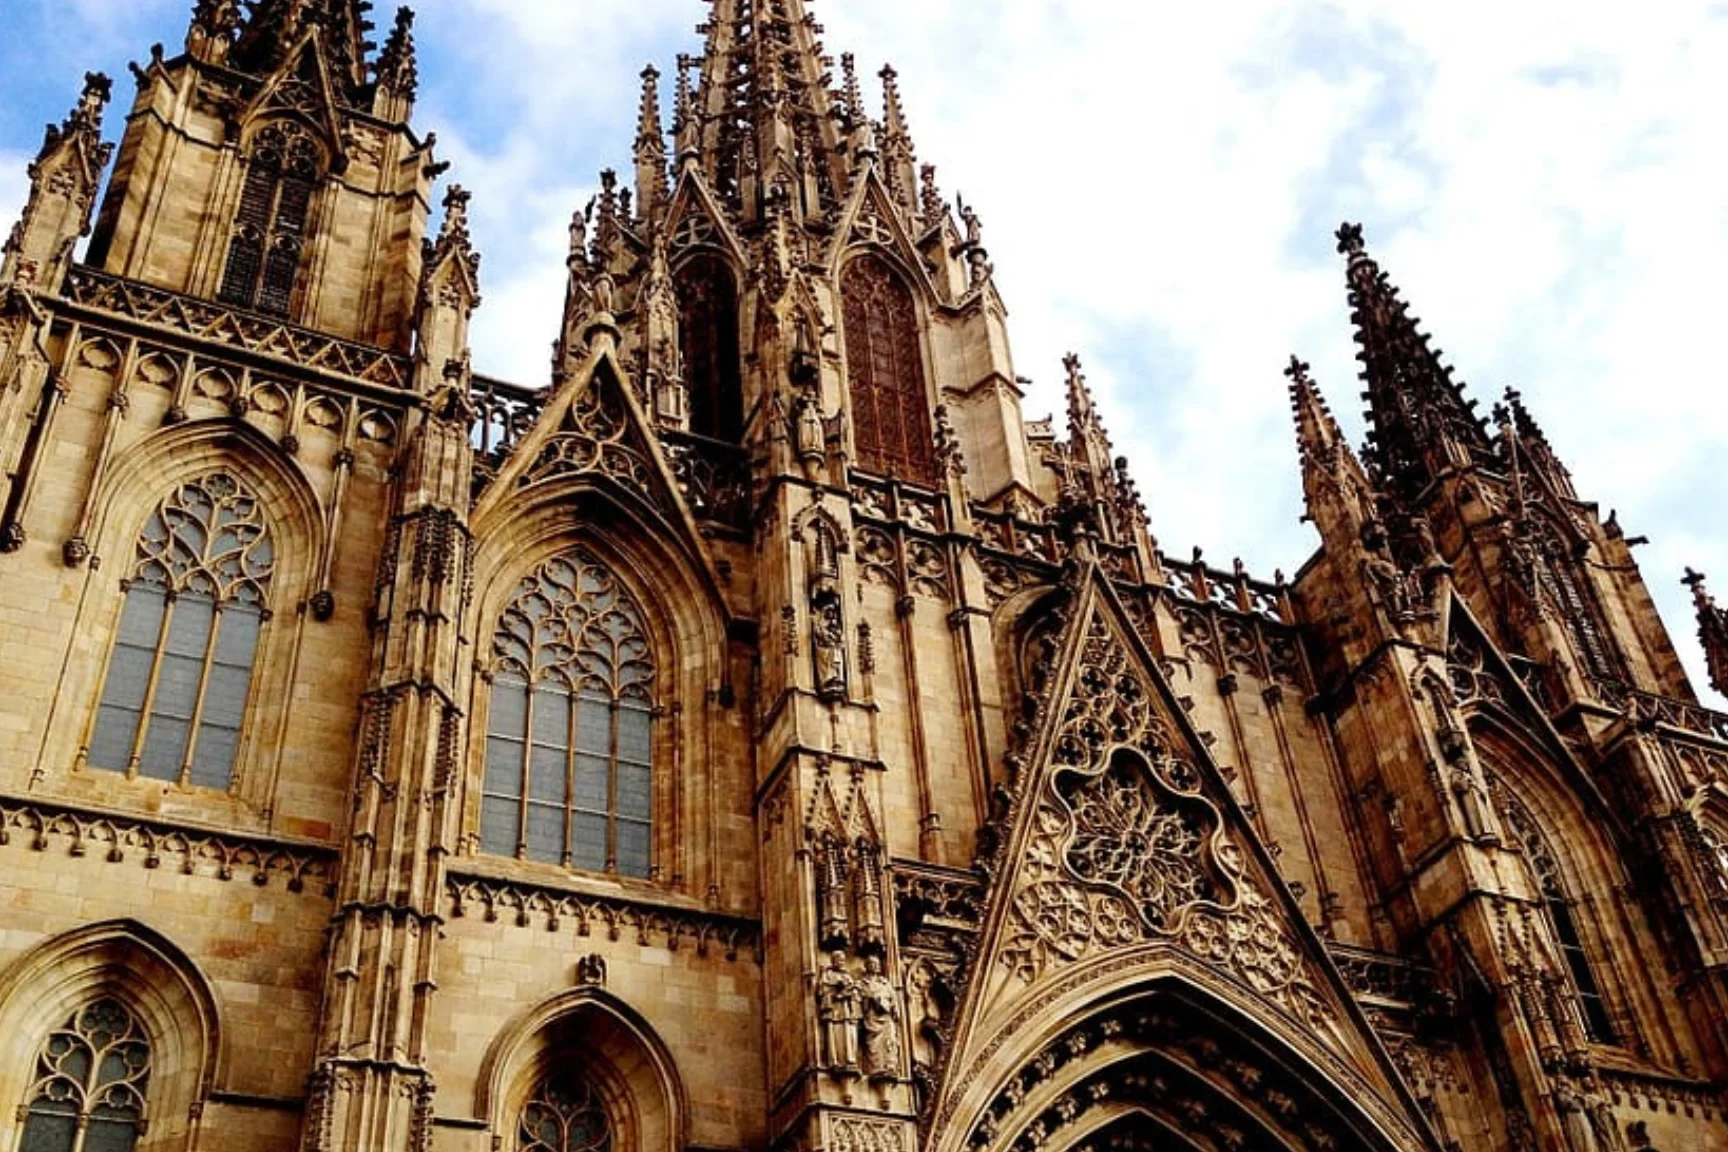 Arte gótico en España: Características y ejemplos destacados